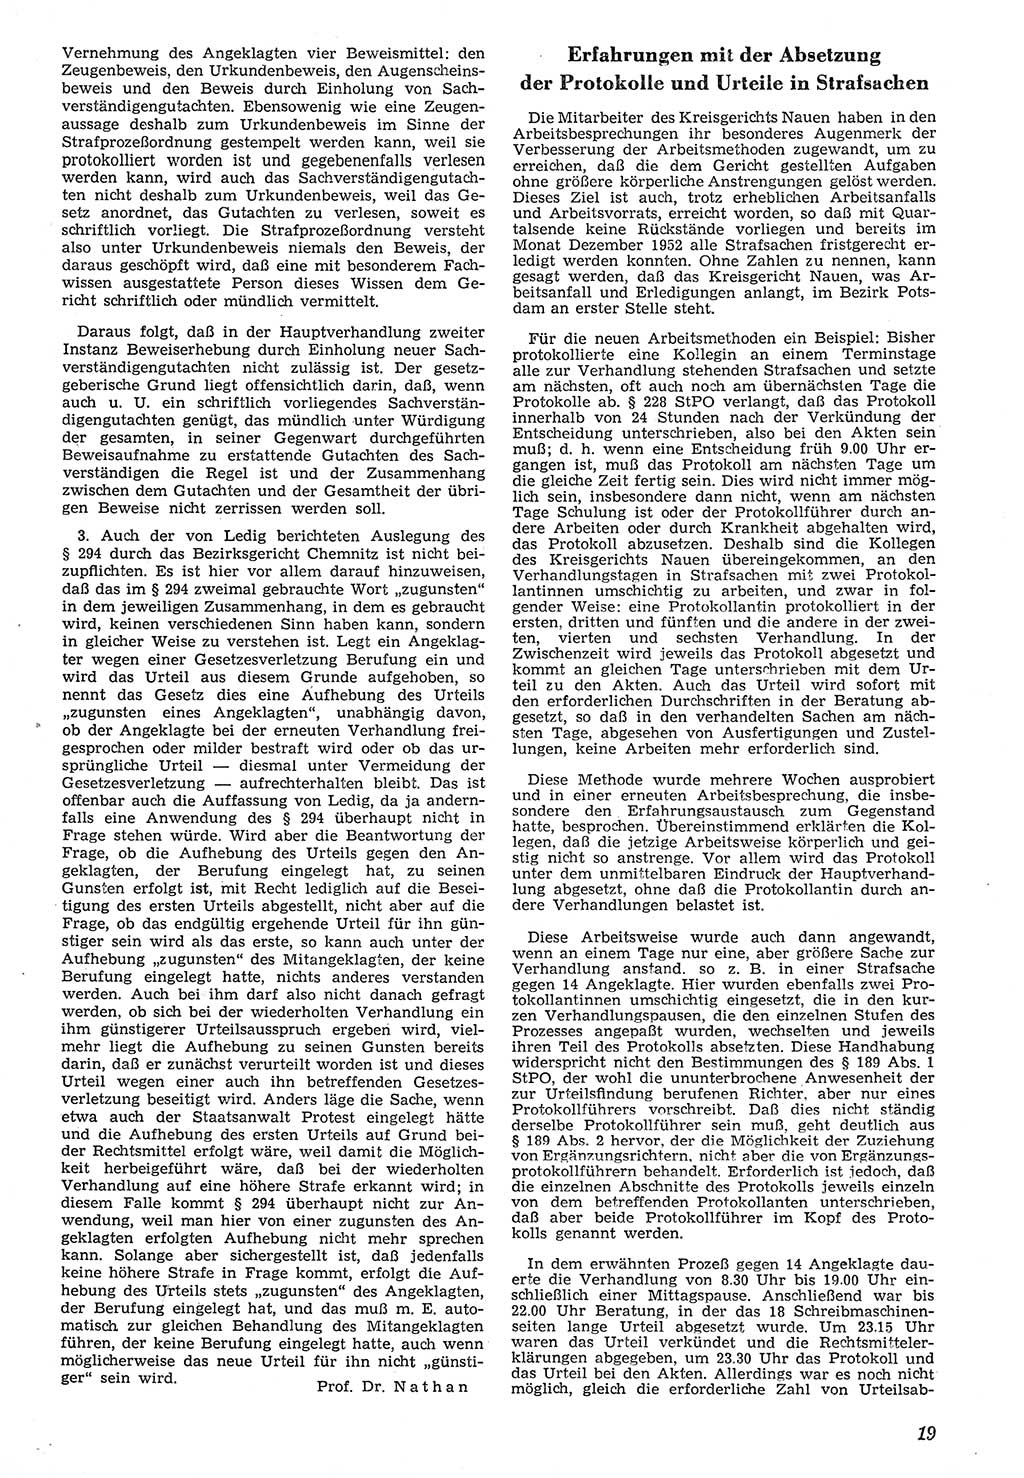 Neue Justiz (NJ), Zeitschrift für Recht und Rechtswissenschaft [Deutsche Demokratische Republik (DDR)], 7. Jahrgang 1953, Seite 19 (NJ DDR 1953, S. 19)